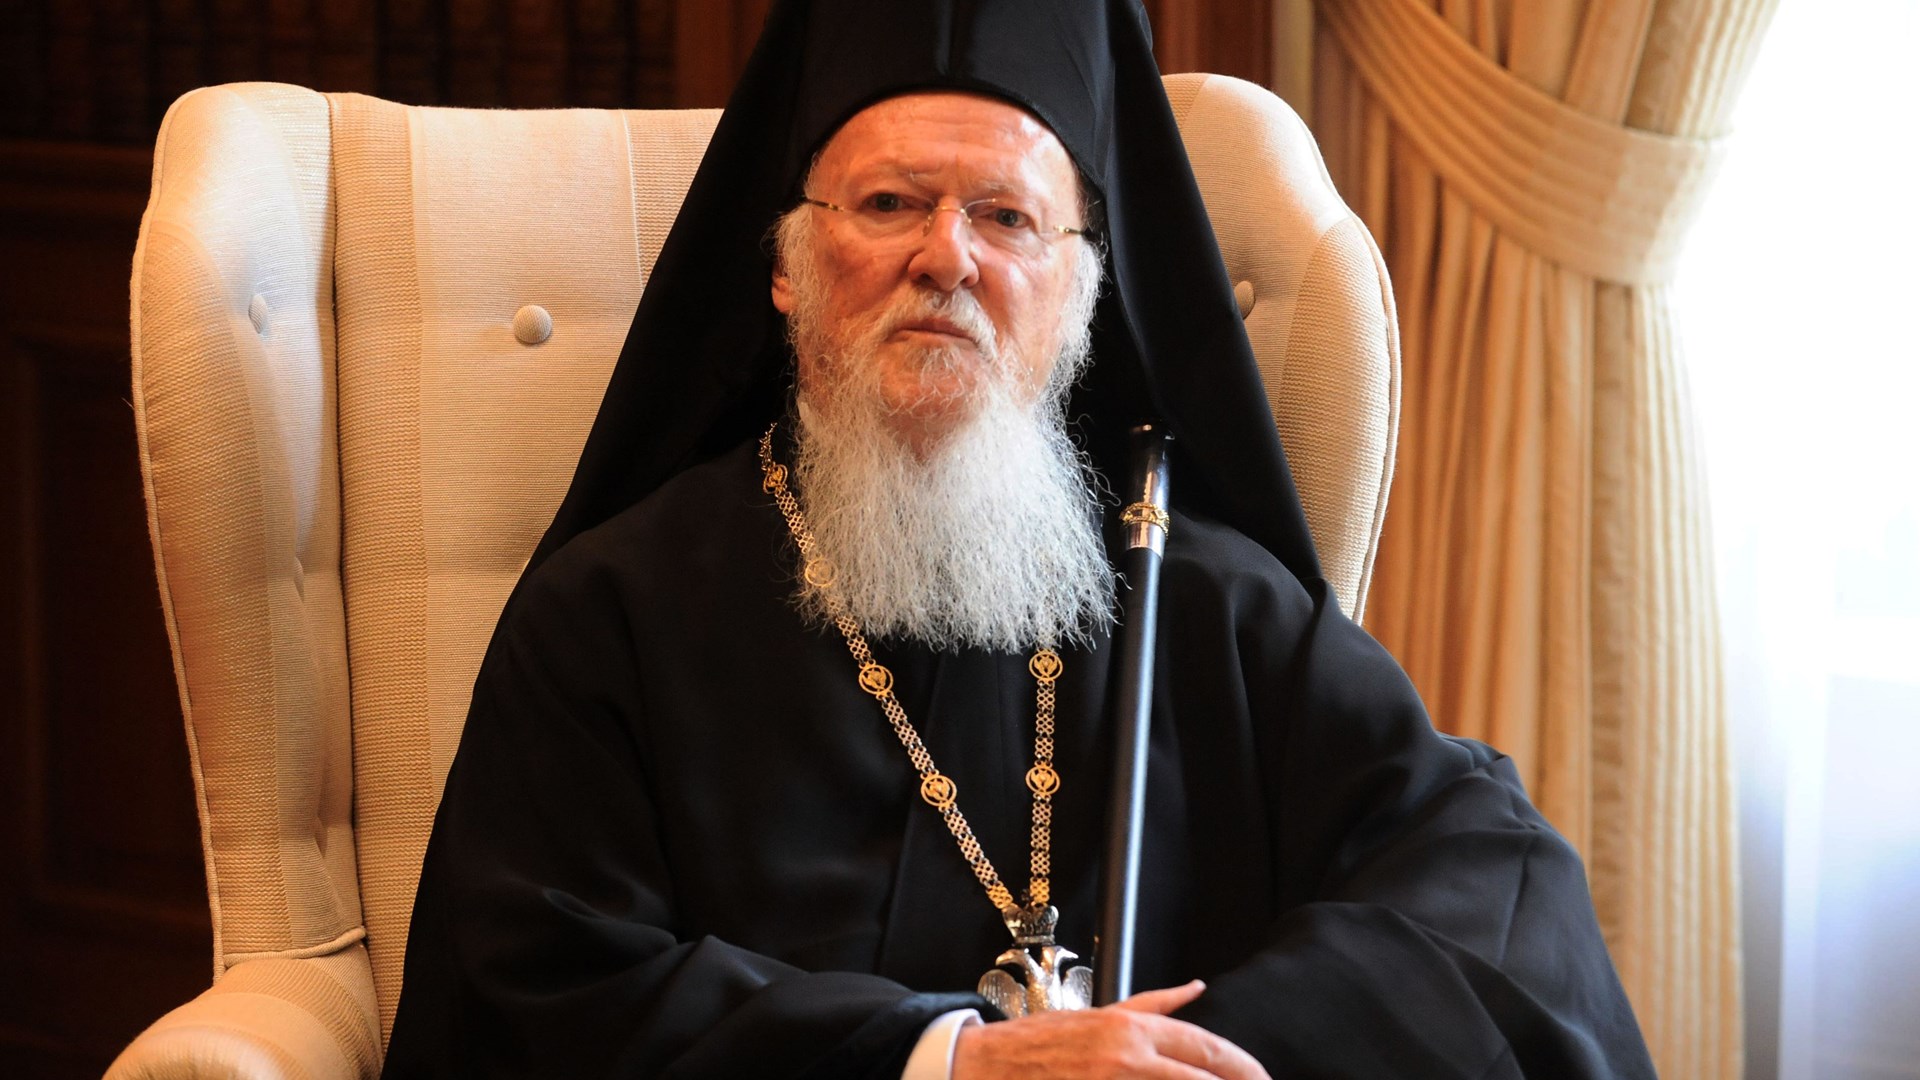 Το μήνυμα του Οικουμενικού Πατριάρχη Βαρθολομαίου προς τις Αρχές και τους πολίτες της Κω